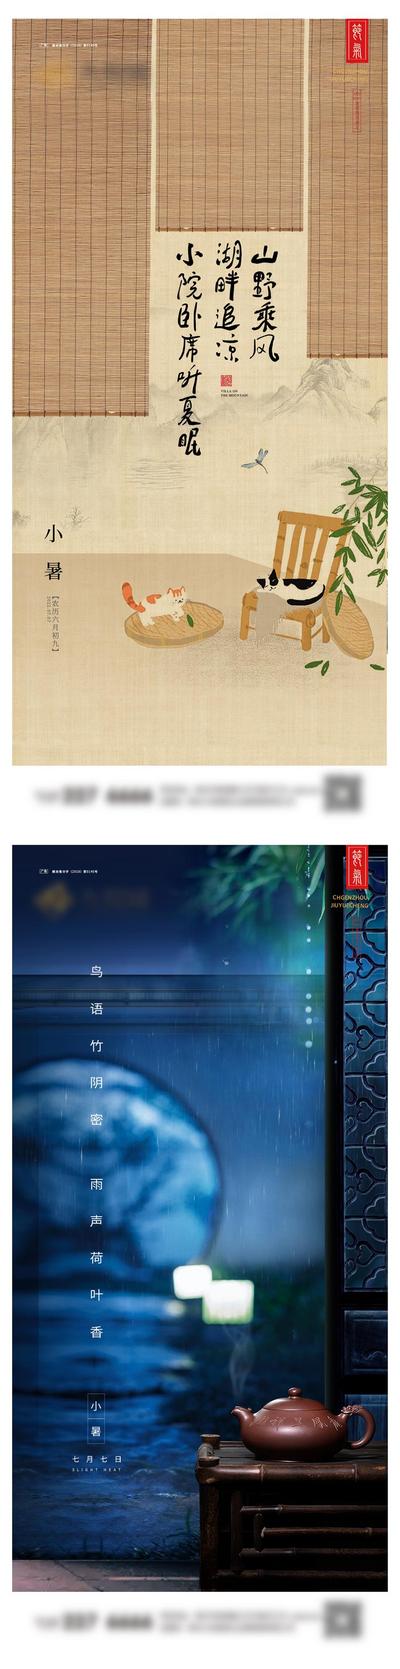 南门网 广告 海报 中式 小暑 房地产 二十四节气 古画 雅致 系列